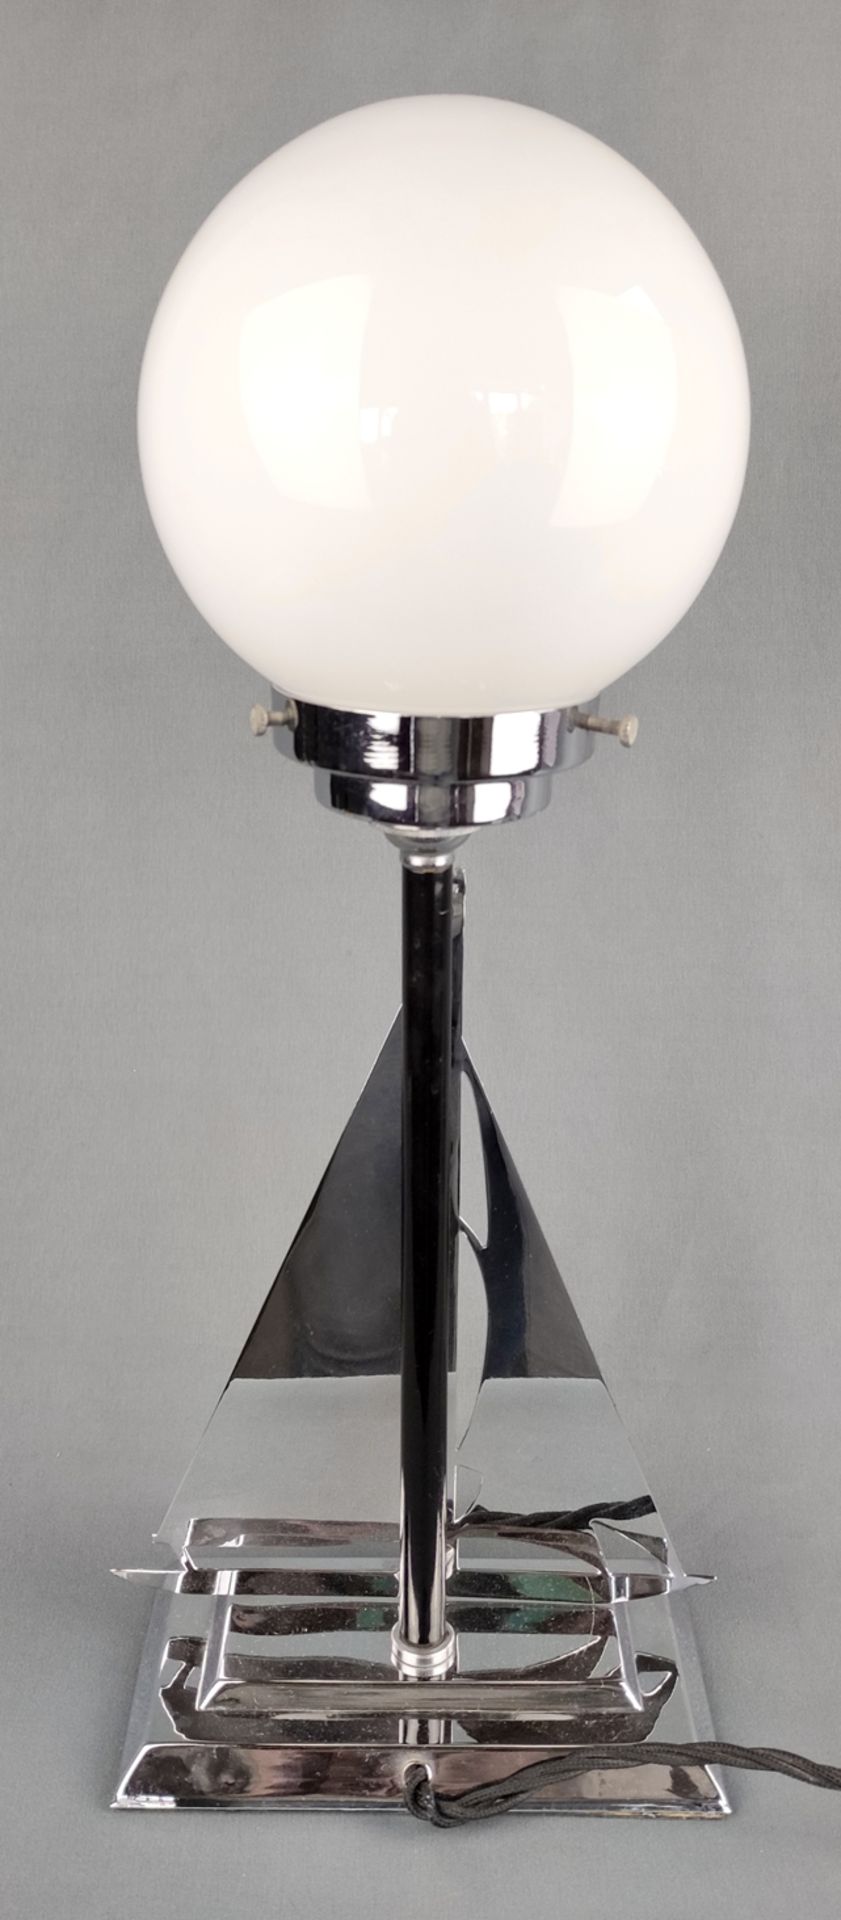 Art Déco "Segelschiff"-Lampe, rechteckiger abgetreppter Standfuß, darauf eine Segelboot-Silhouette, - Bild 3 aus 3